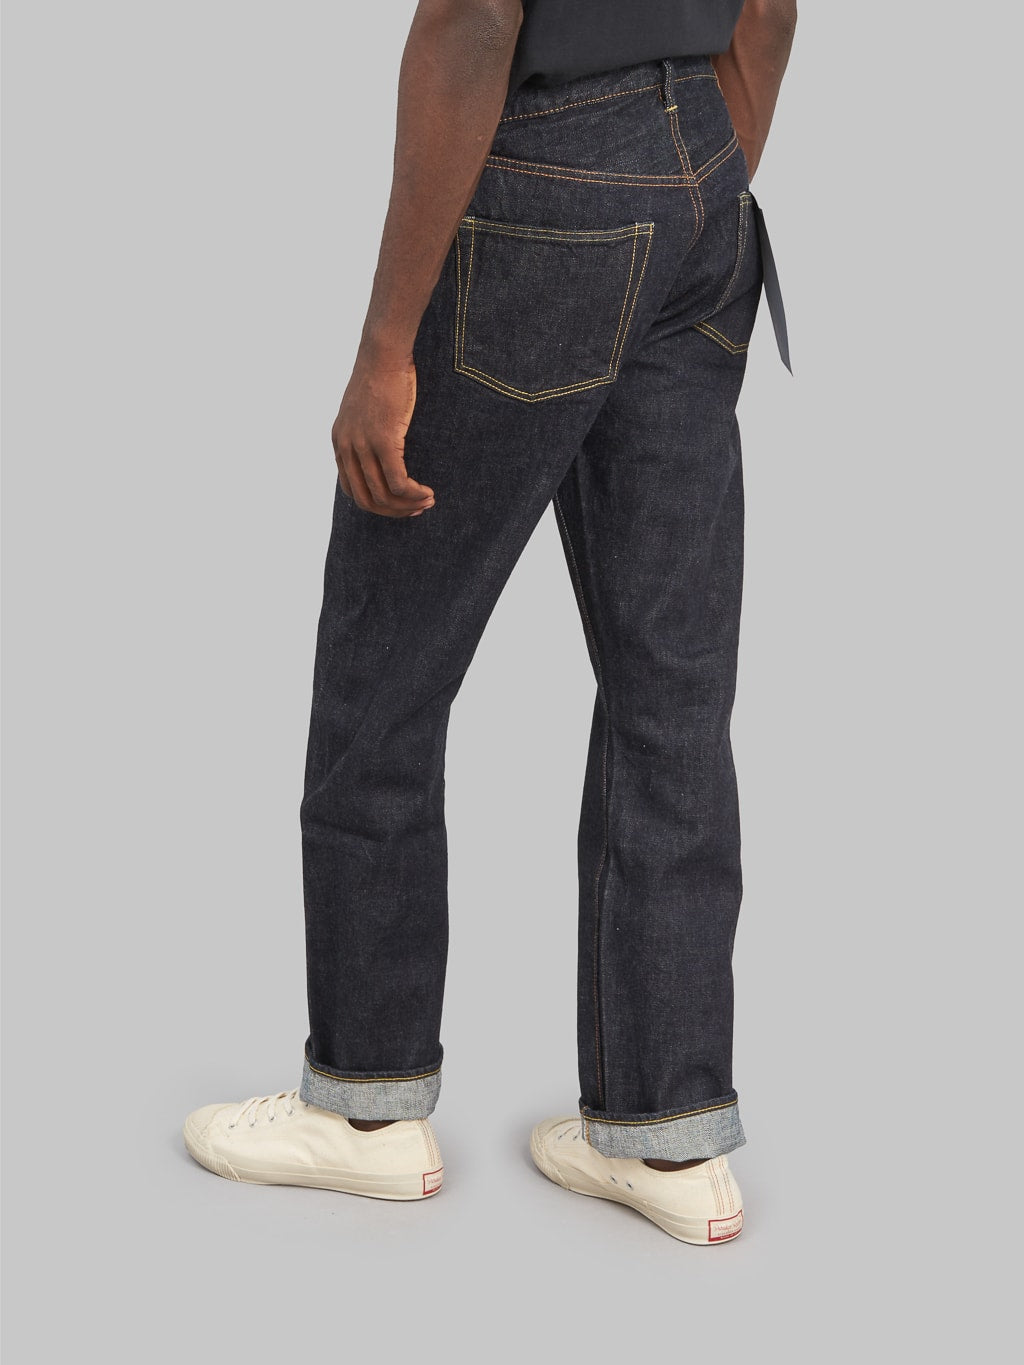 Fullcount 1101XXW regular Straight selvedge Jeans back rise